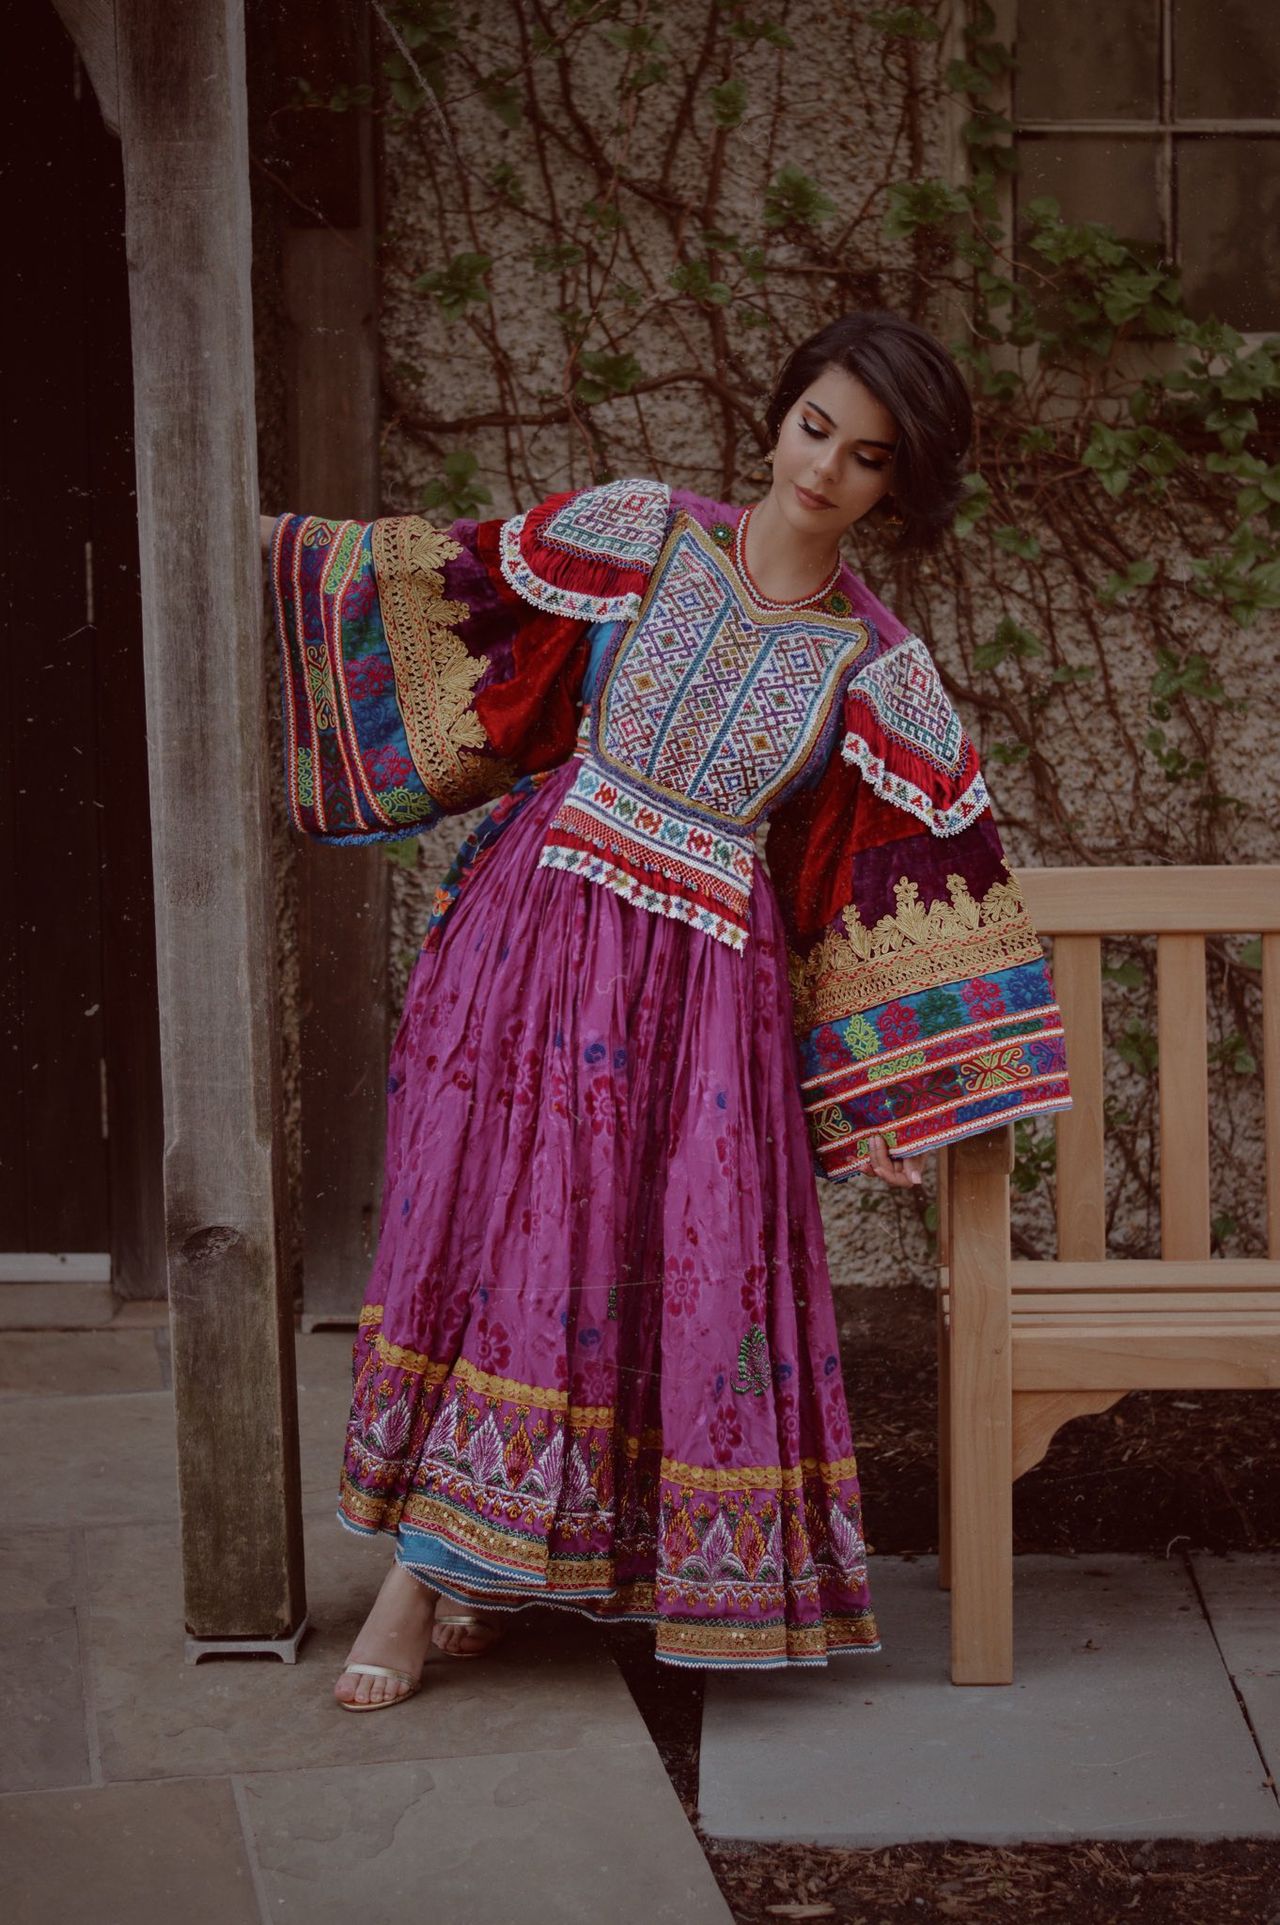 Best Dressed Afghan/twitter